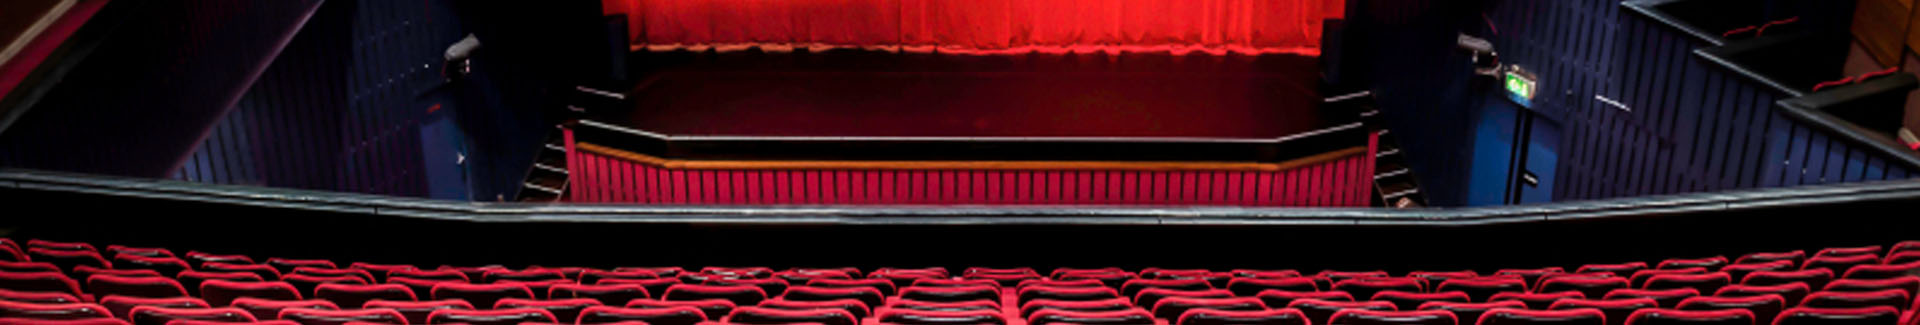 escenari i cadires d'un teatre